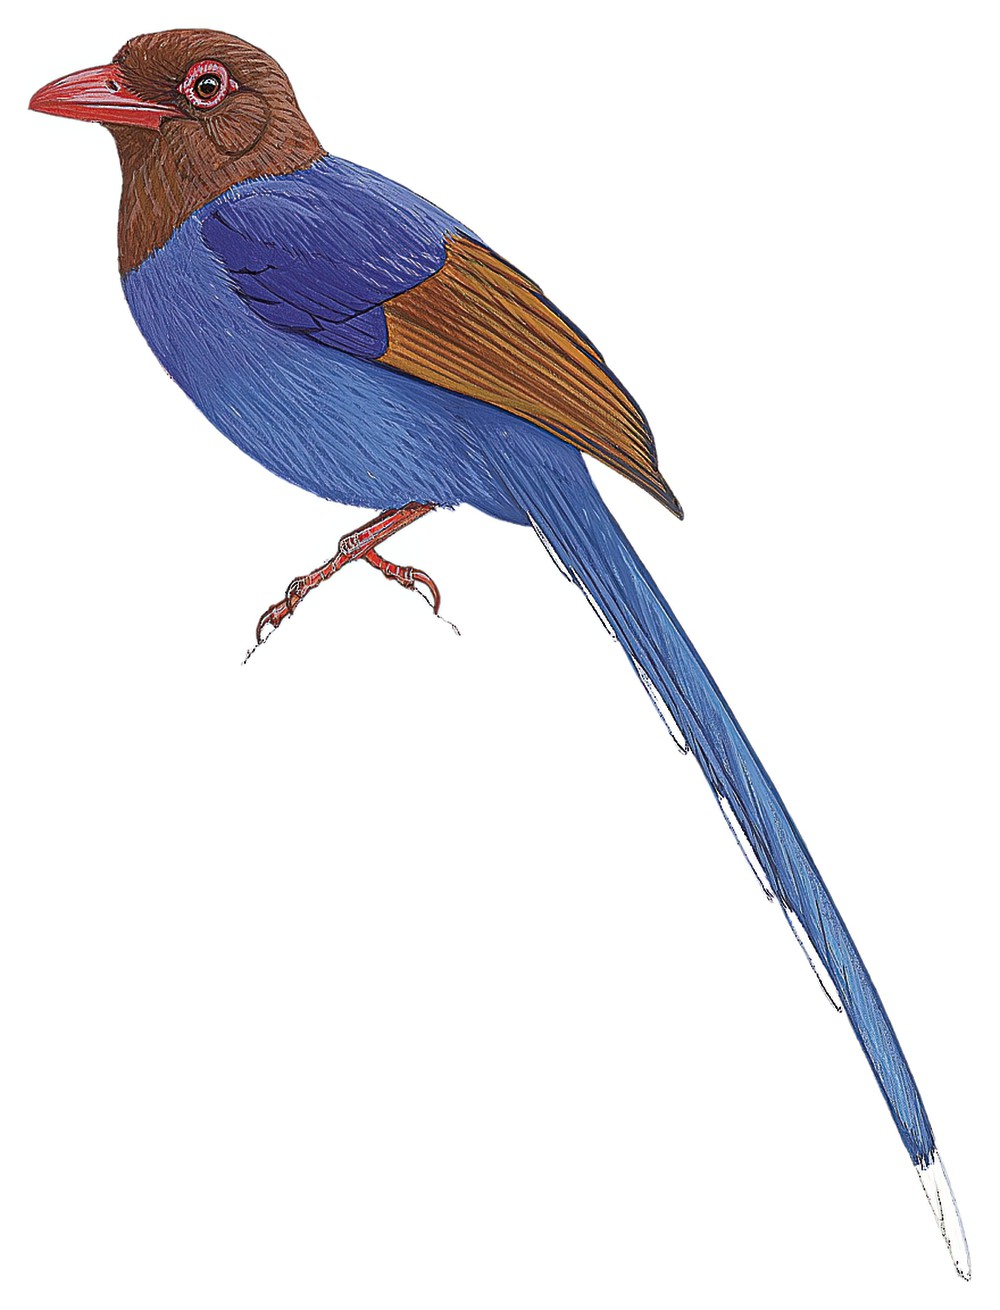 Sri Lanka Blue-Magpie / Urocissa ornata